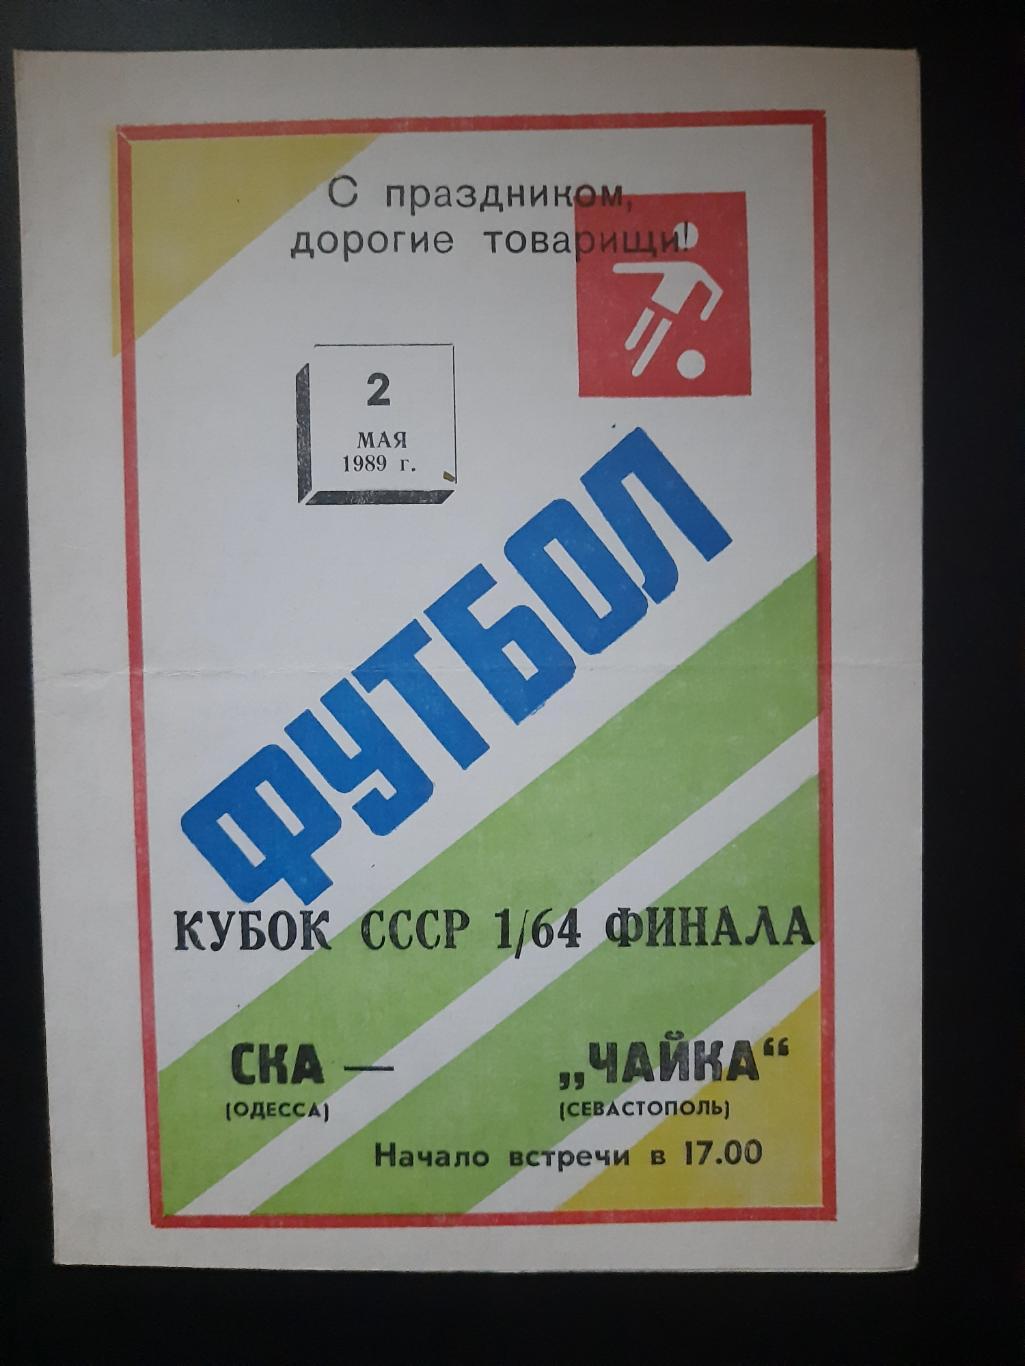 СКА Одесса - Чайка Севастополь 2.05.1989,кубок